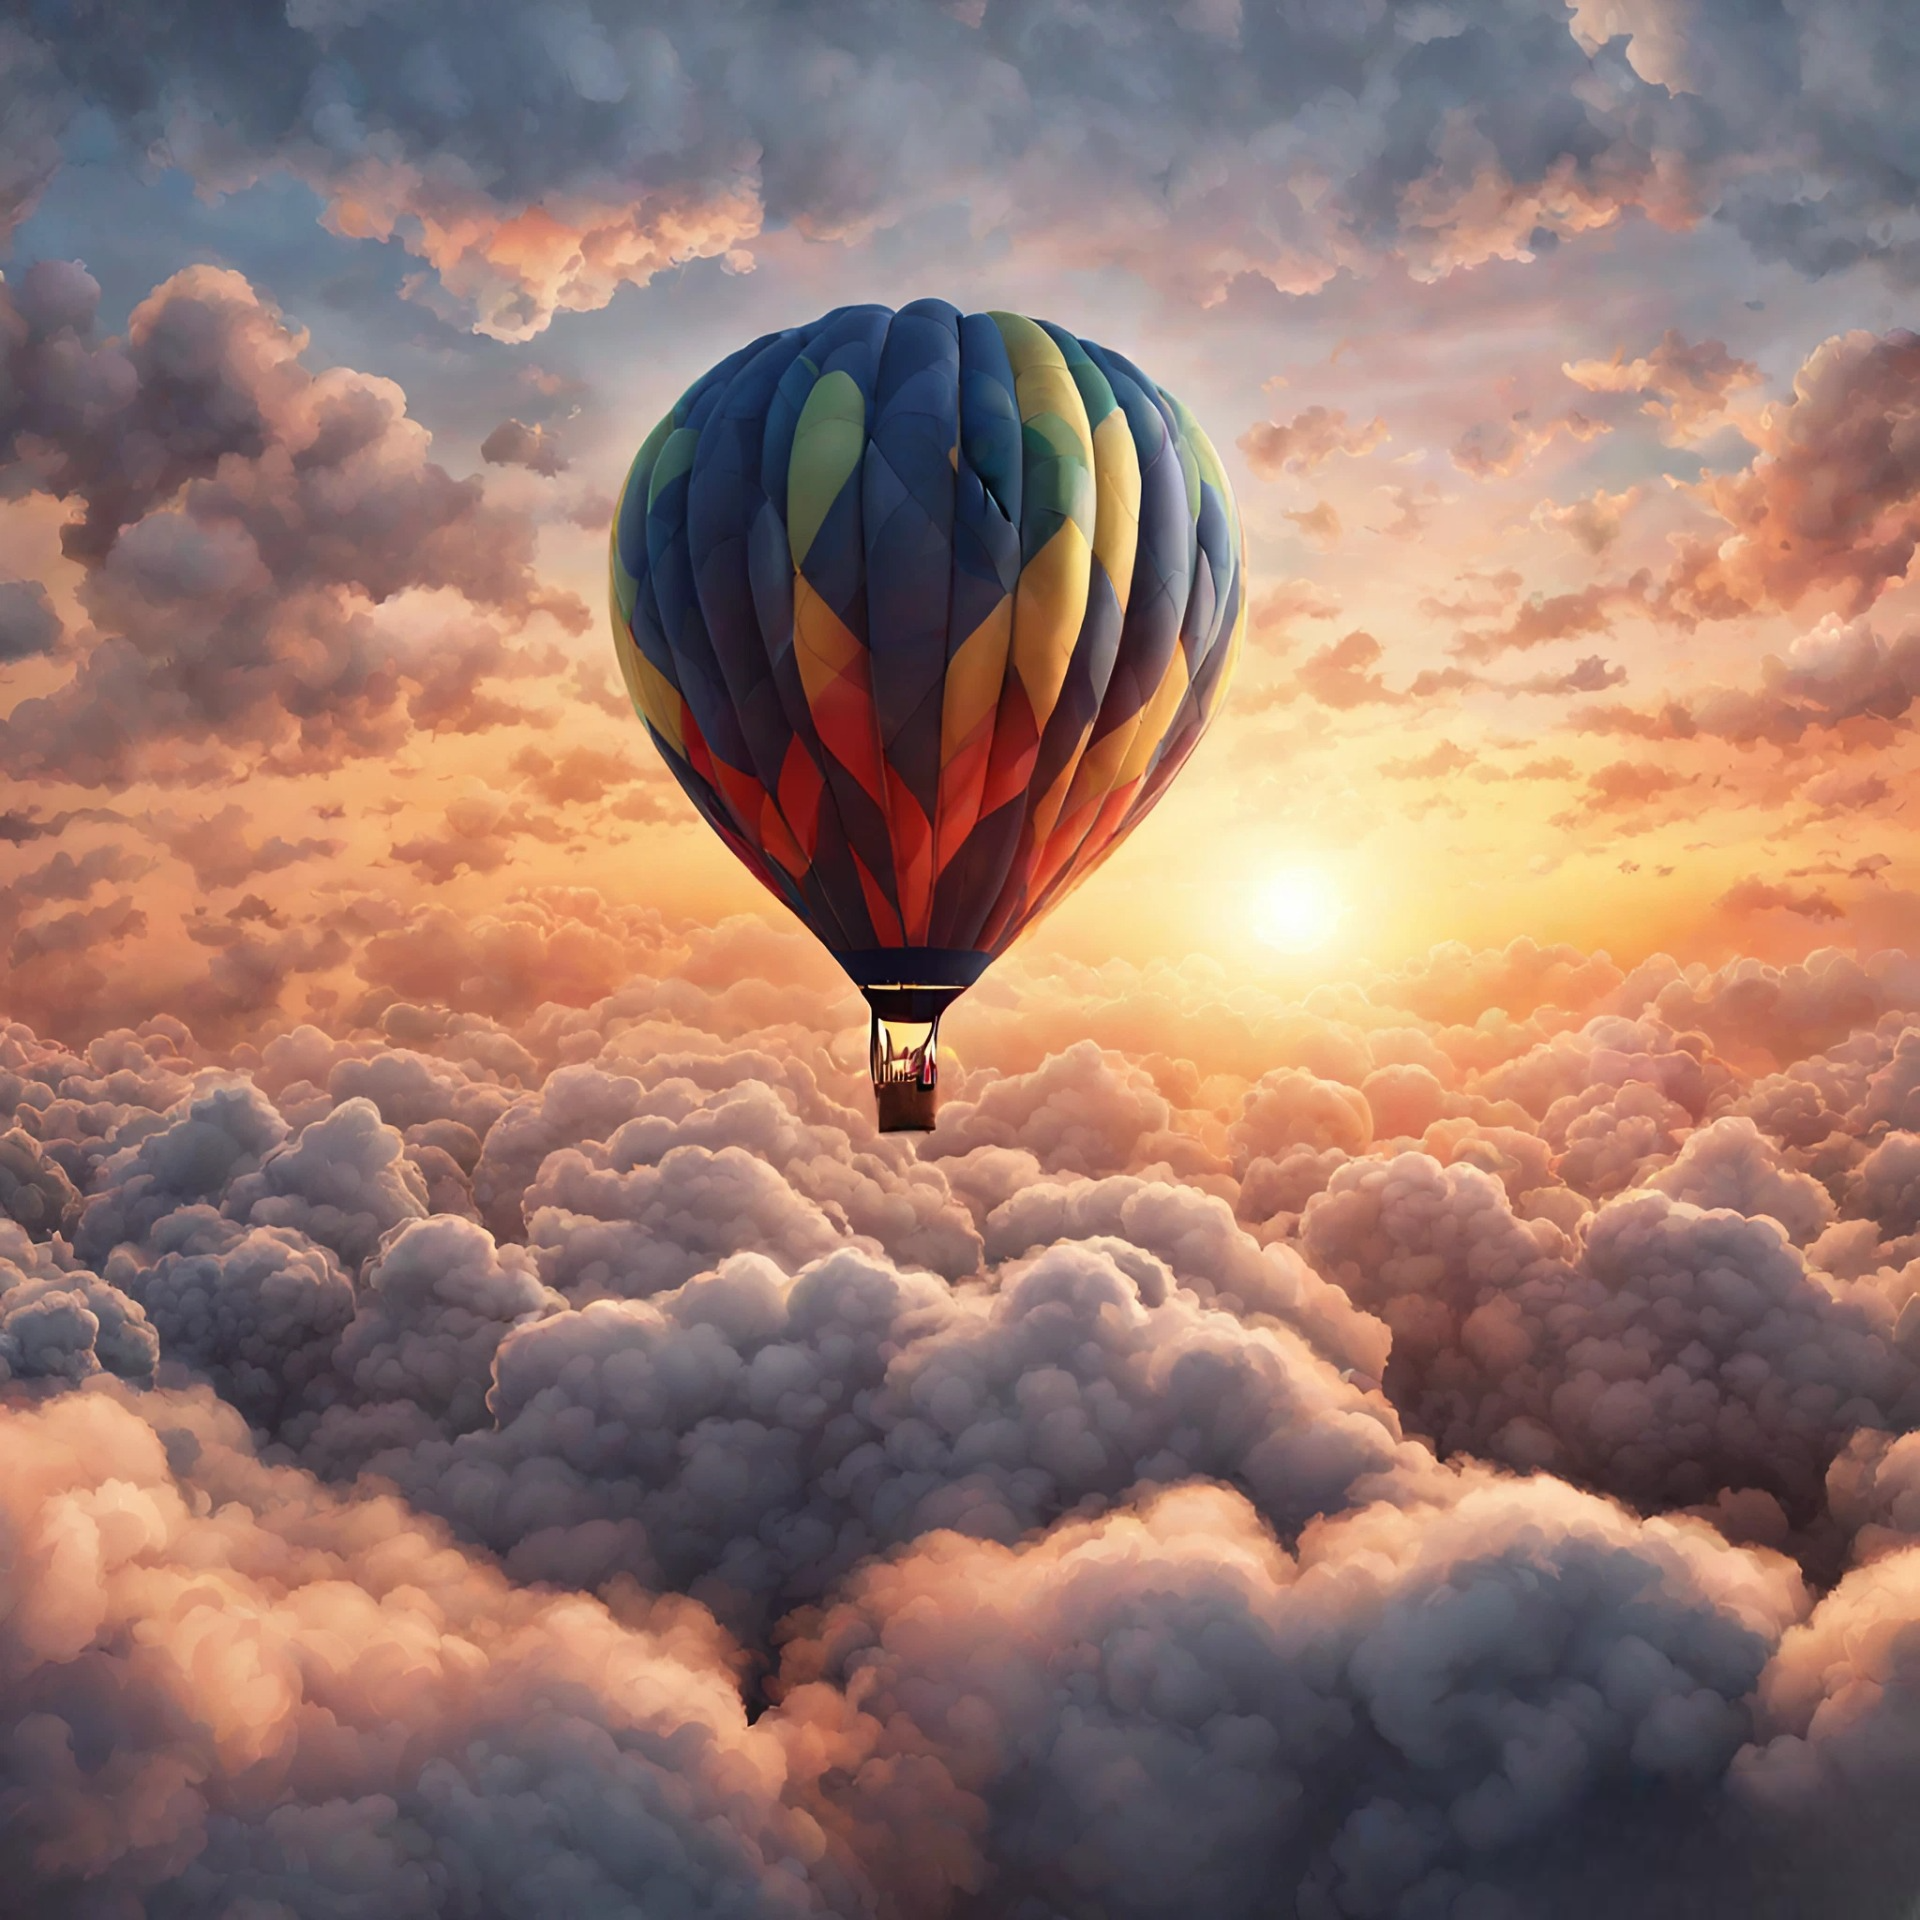 綺麗な夕日と空と雲の上を飛ぶ気球の幻想的なリアル風景